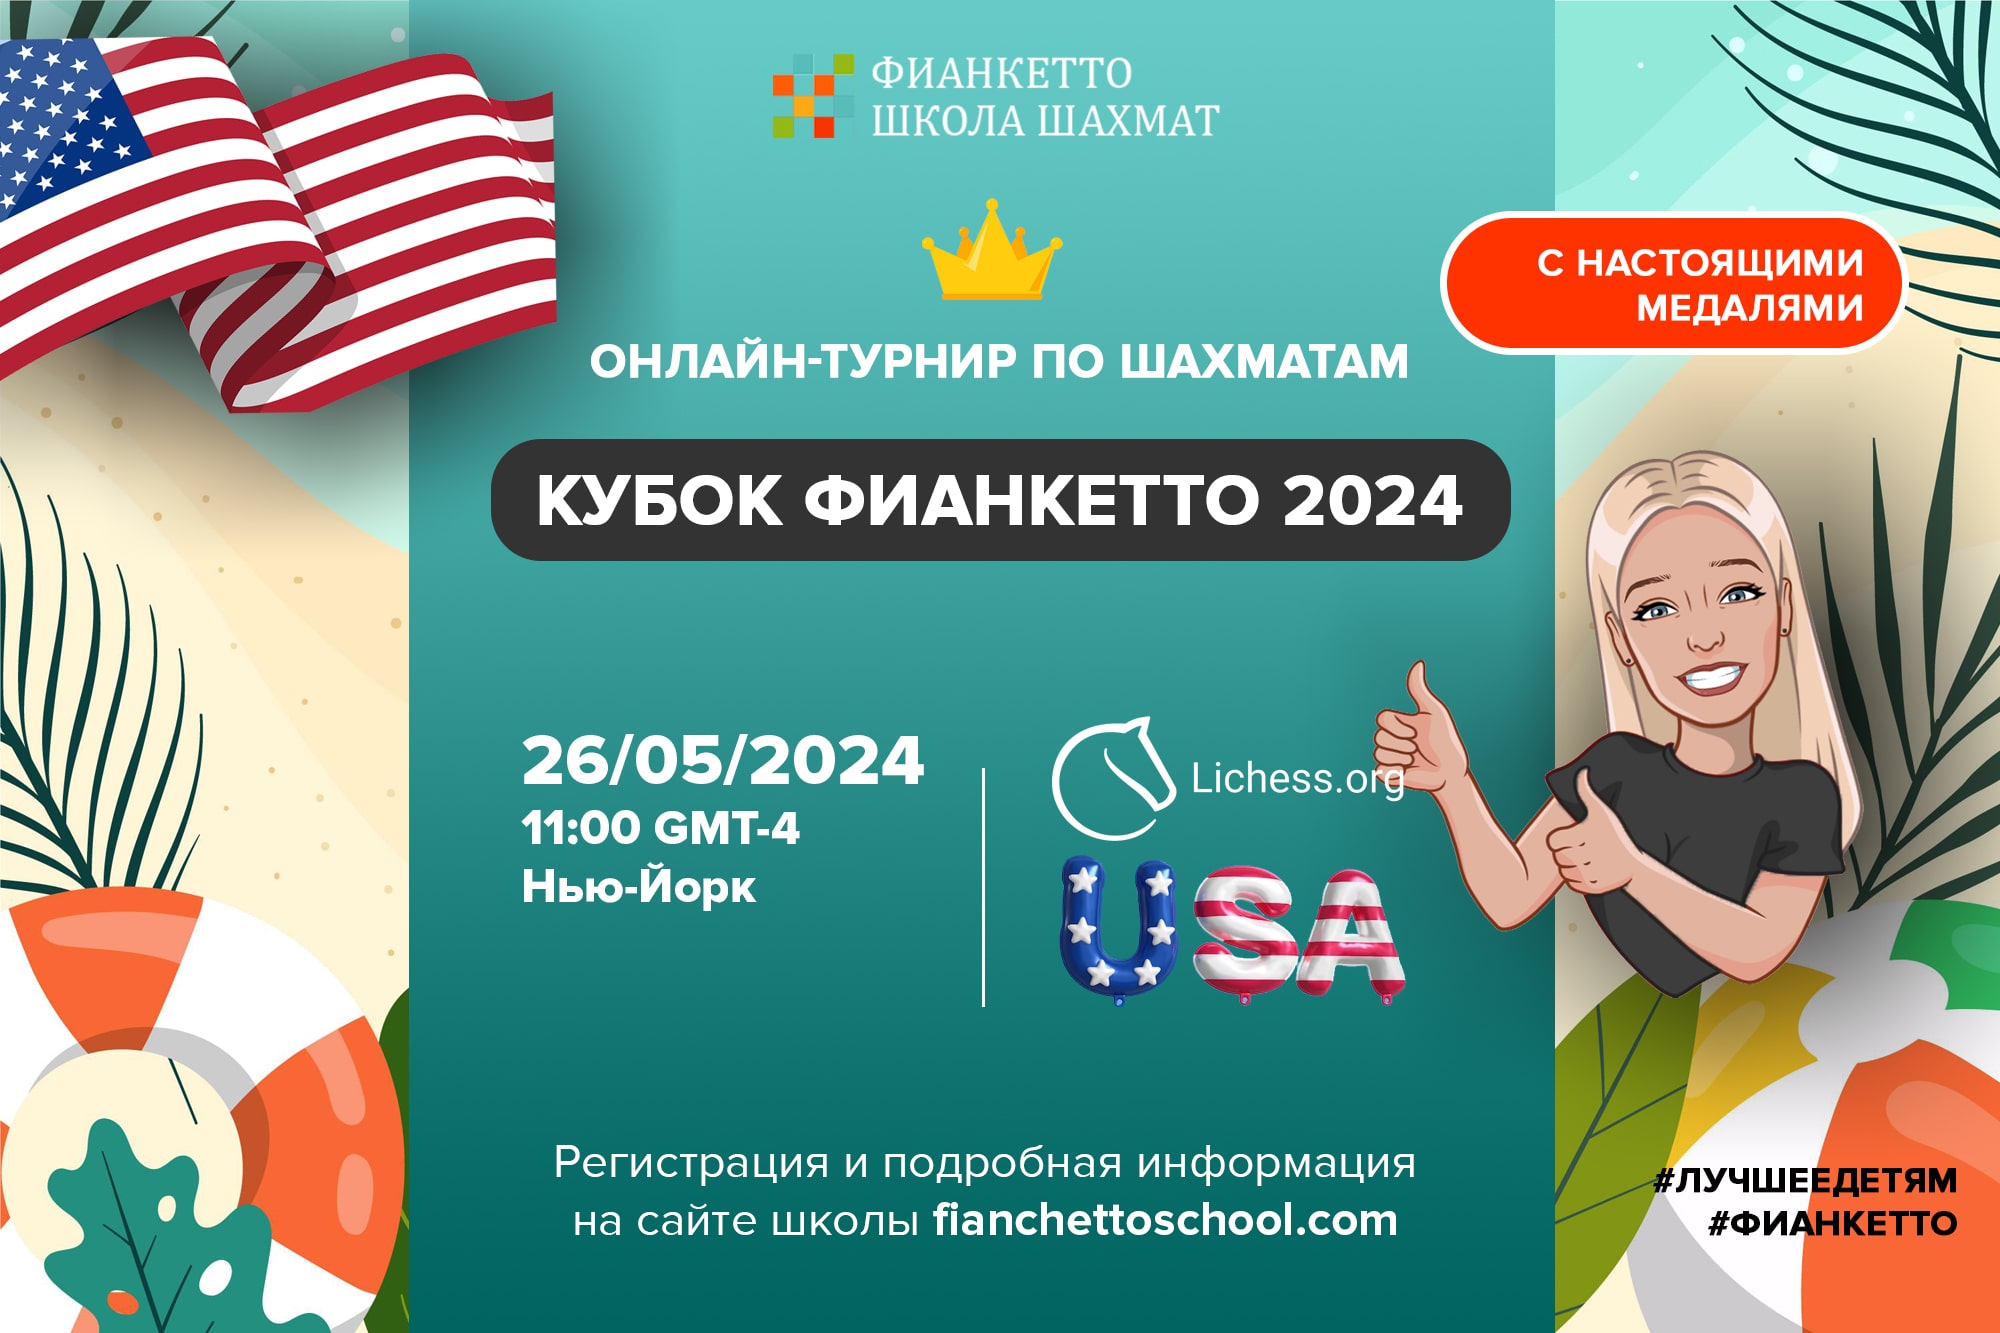 Кубок Фианкетто 2024 USA - онлайн-турнир по шахматам